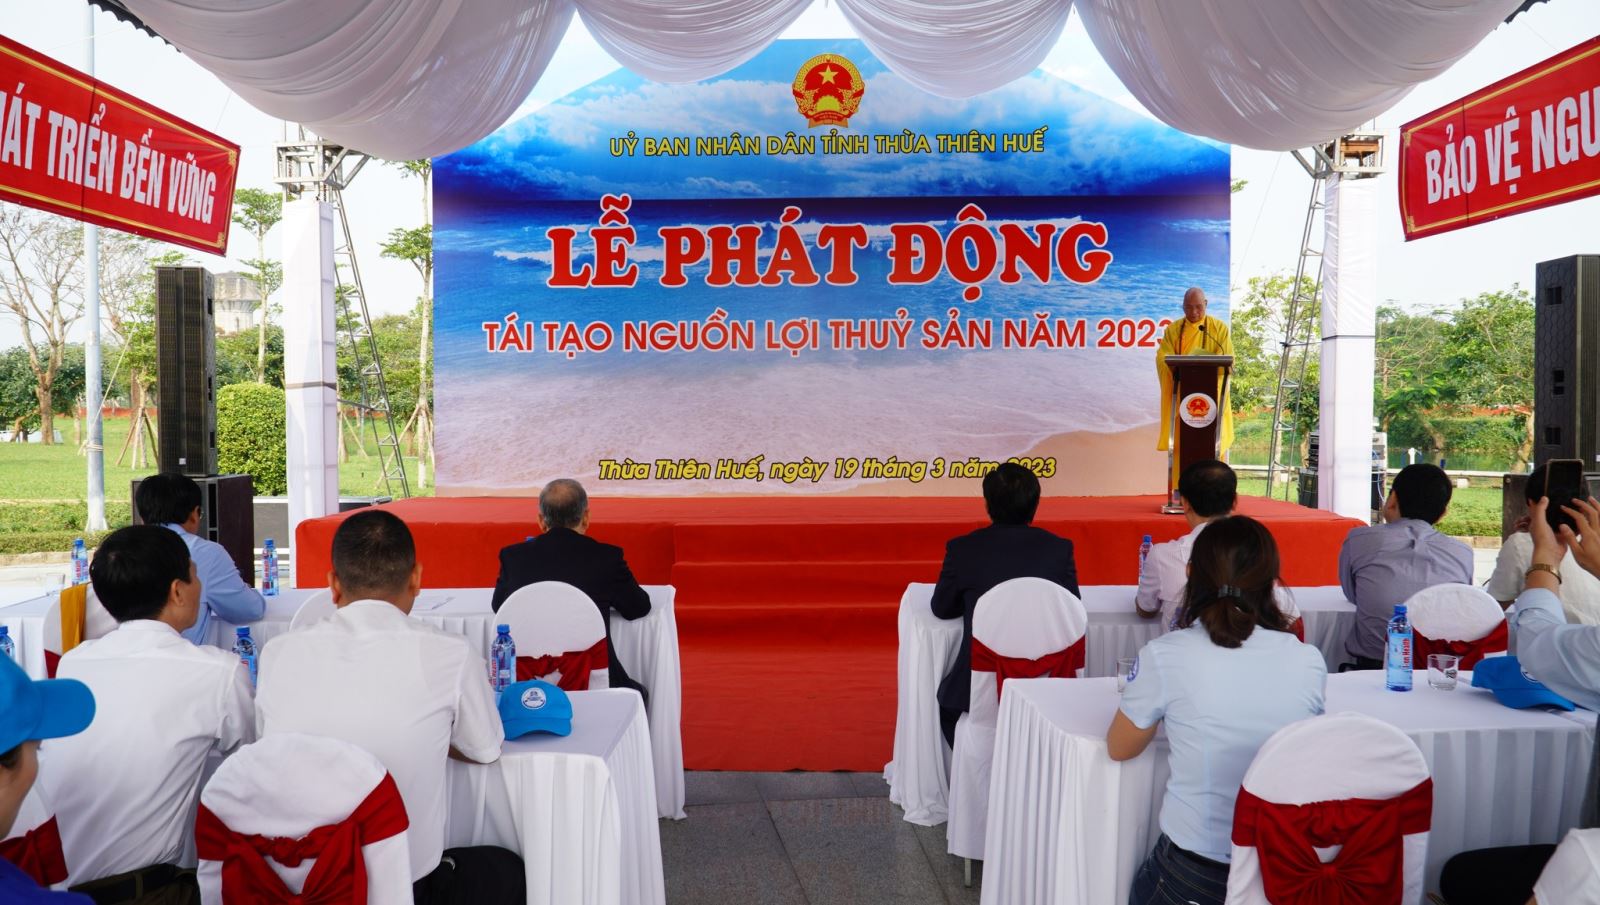 Tỉnh Thừa Thiên- Huế tổ chức Lễ phát động tái tạo nguồn lợi thủy sản năm 2023.